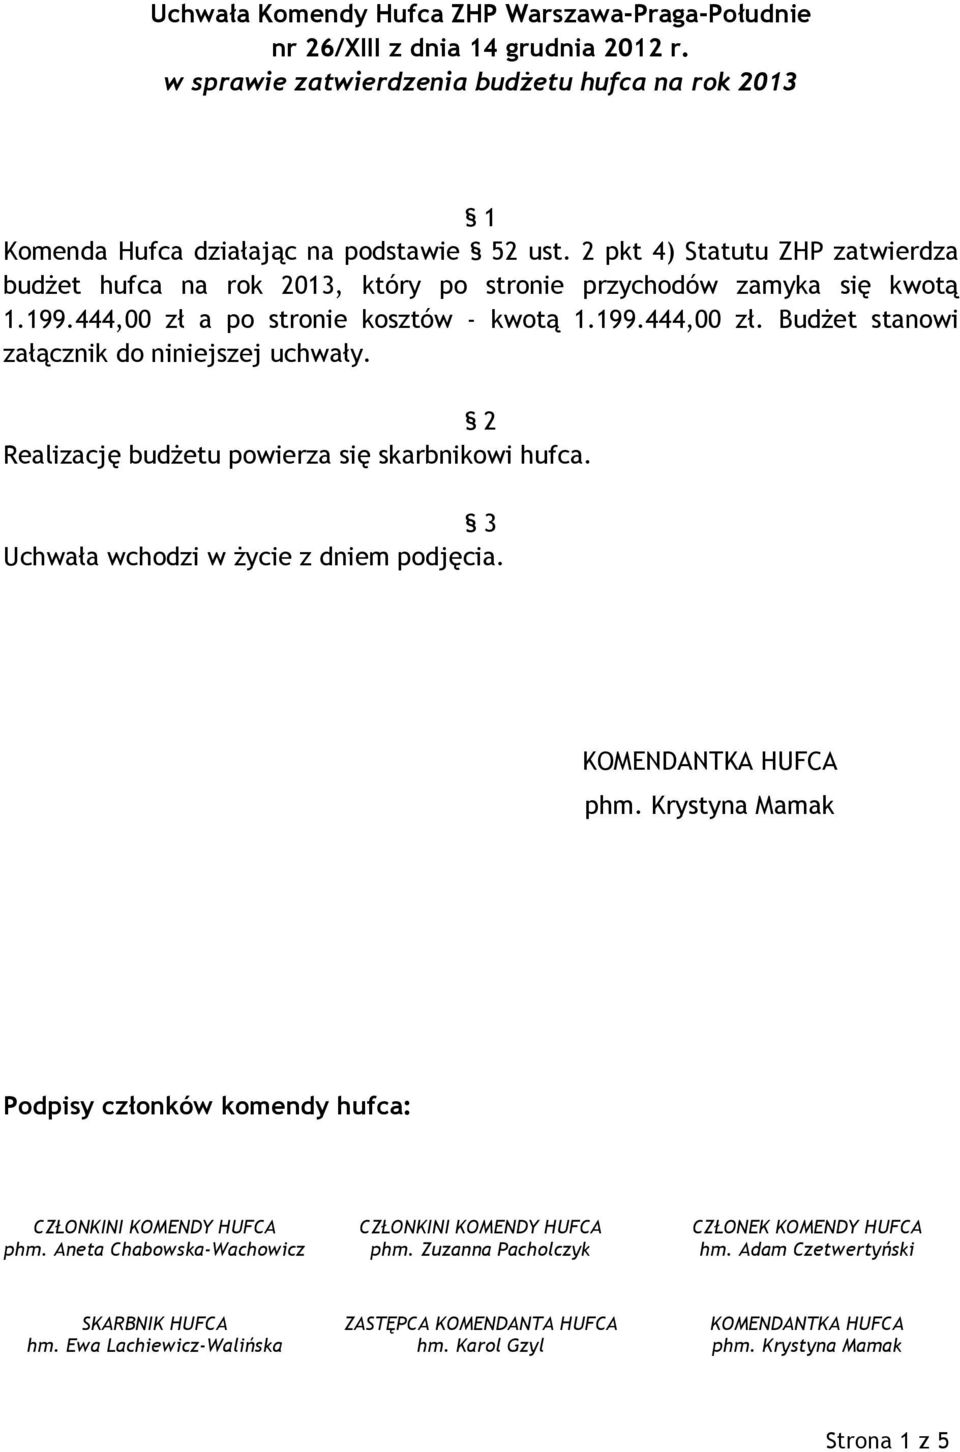 2 pkt 4) Statutu ZHP zatwierdza budżet hufca na rok 2013, który po stronie przychodów zamyka się kwotą 1.199.